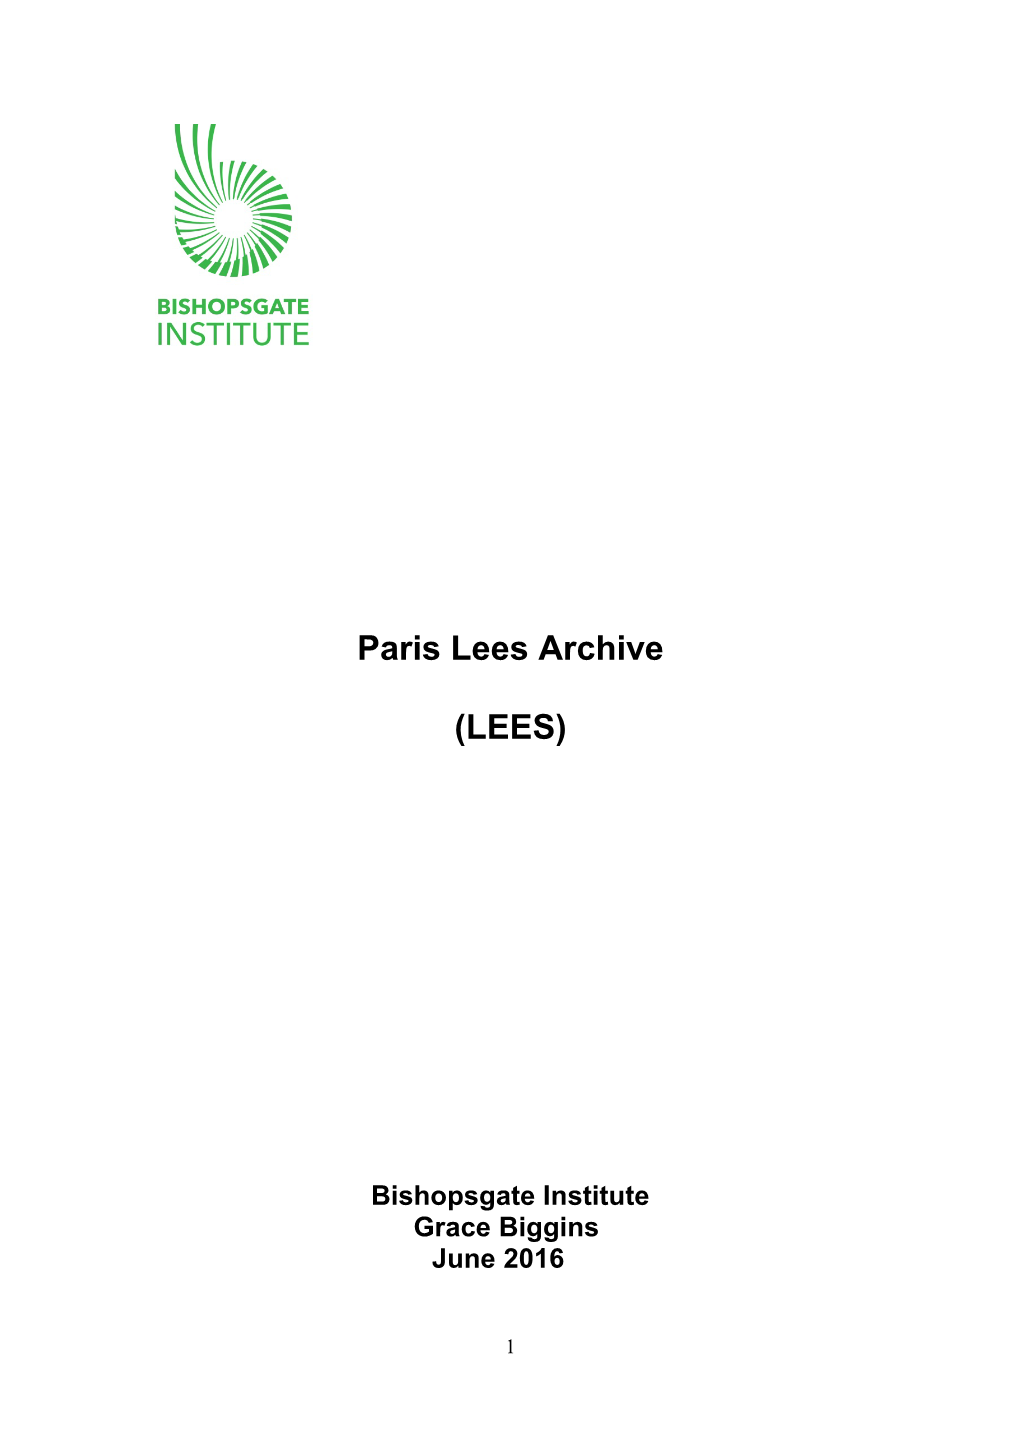 Paris Lees Archive (LEES)